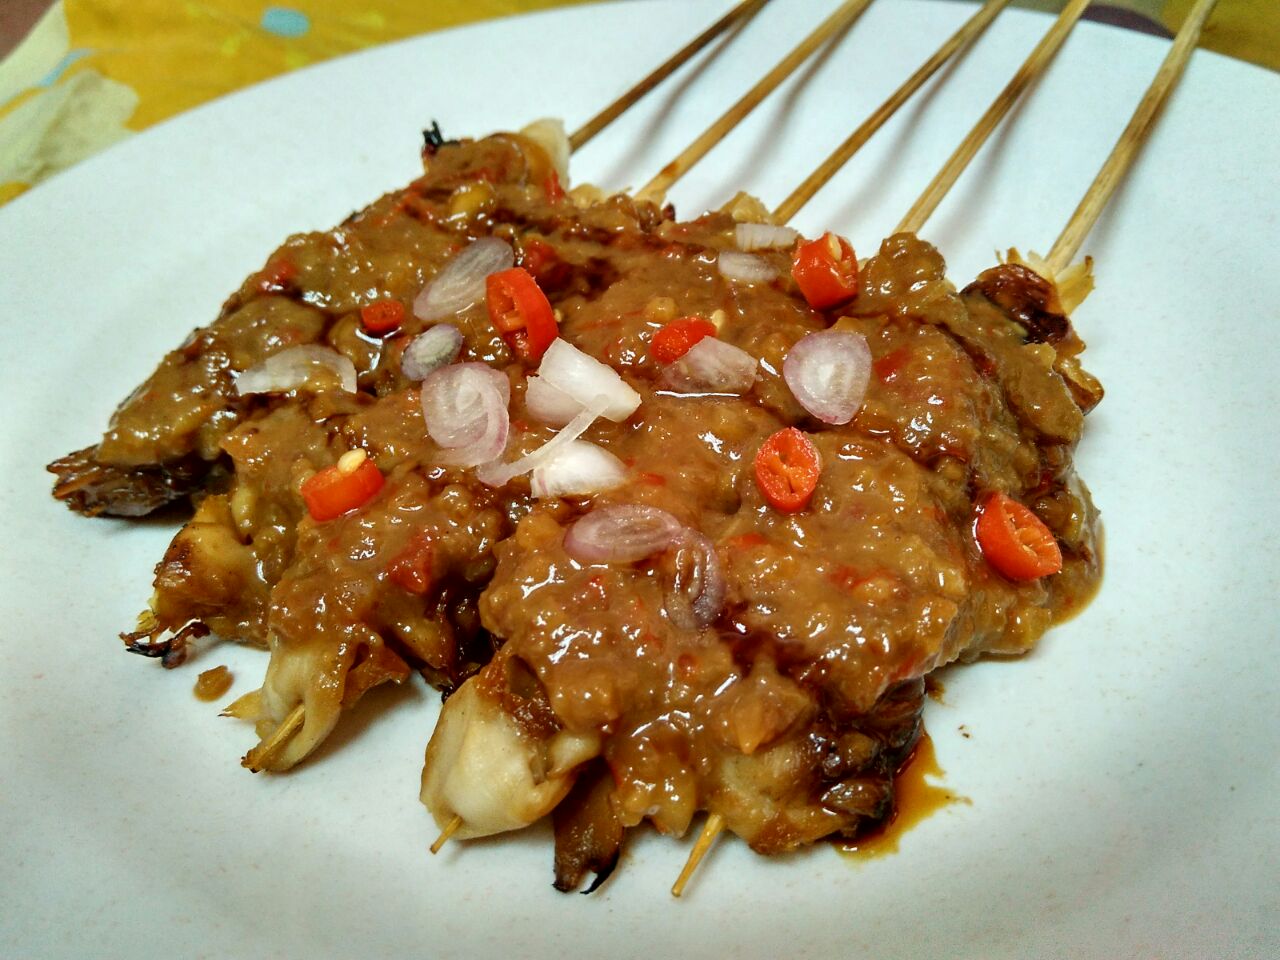  Sate Jamur Tiram Bumbu Kacang resep easy healthy